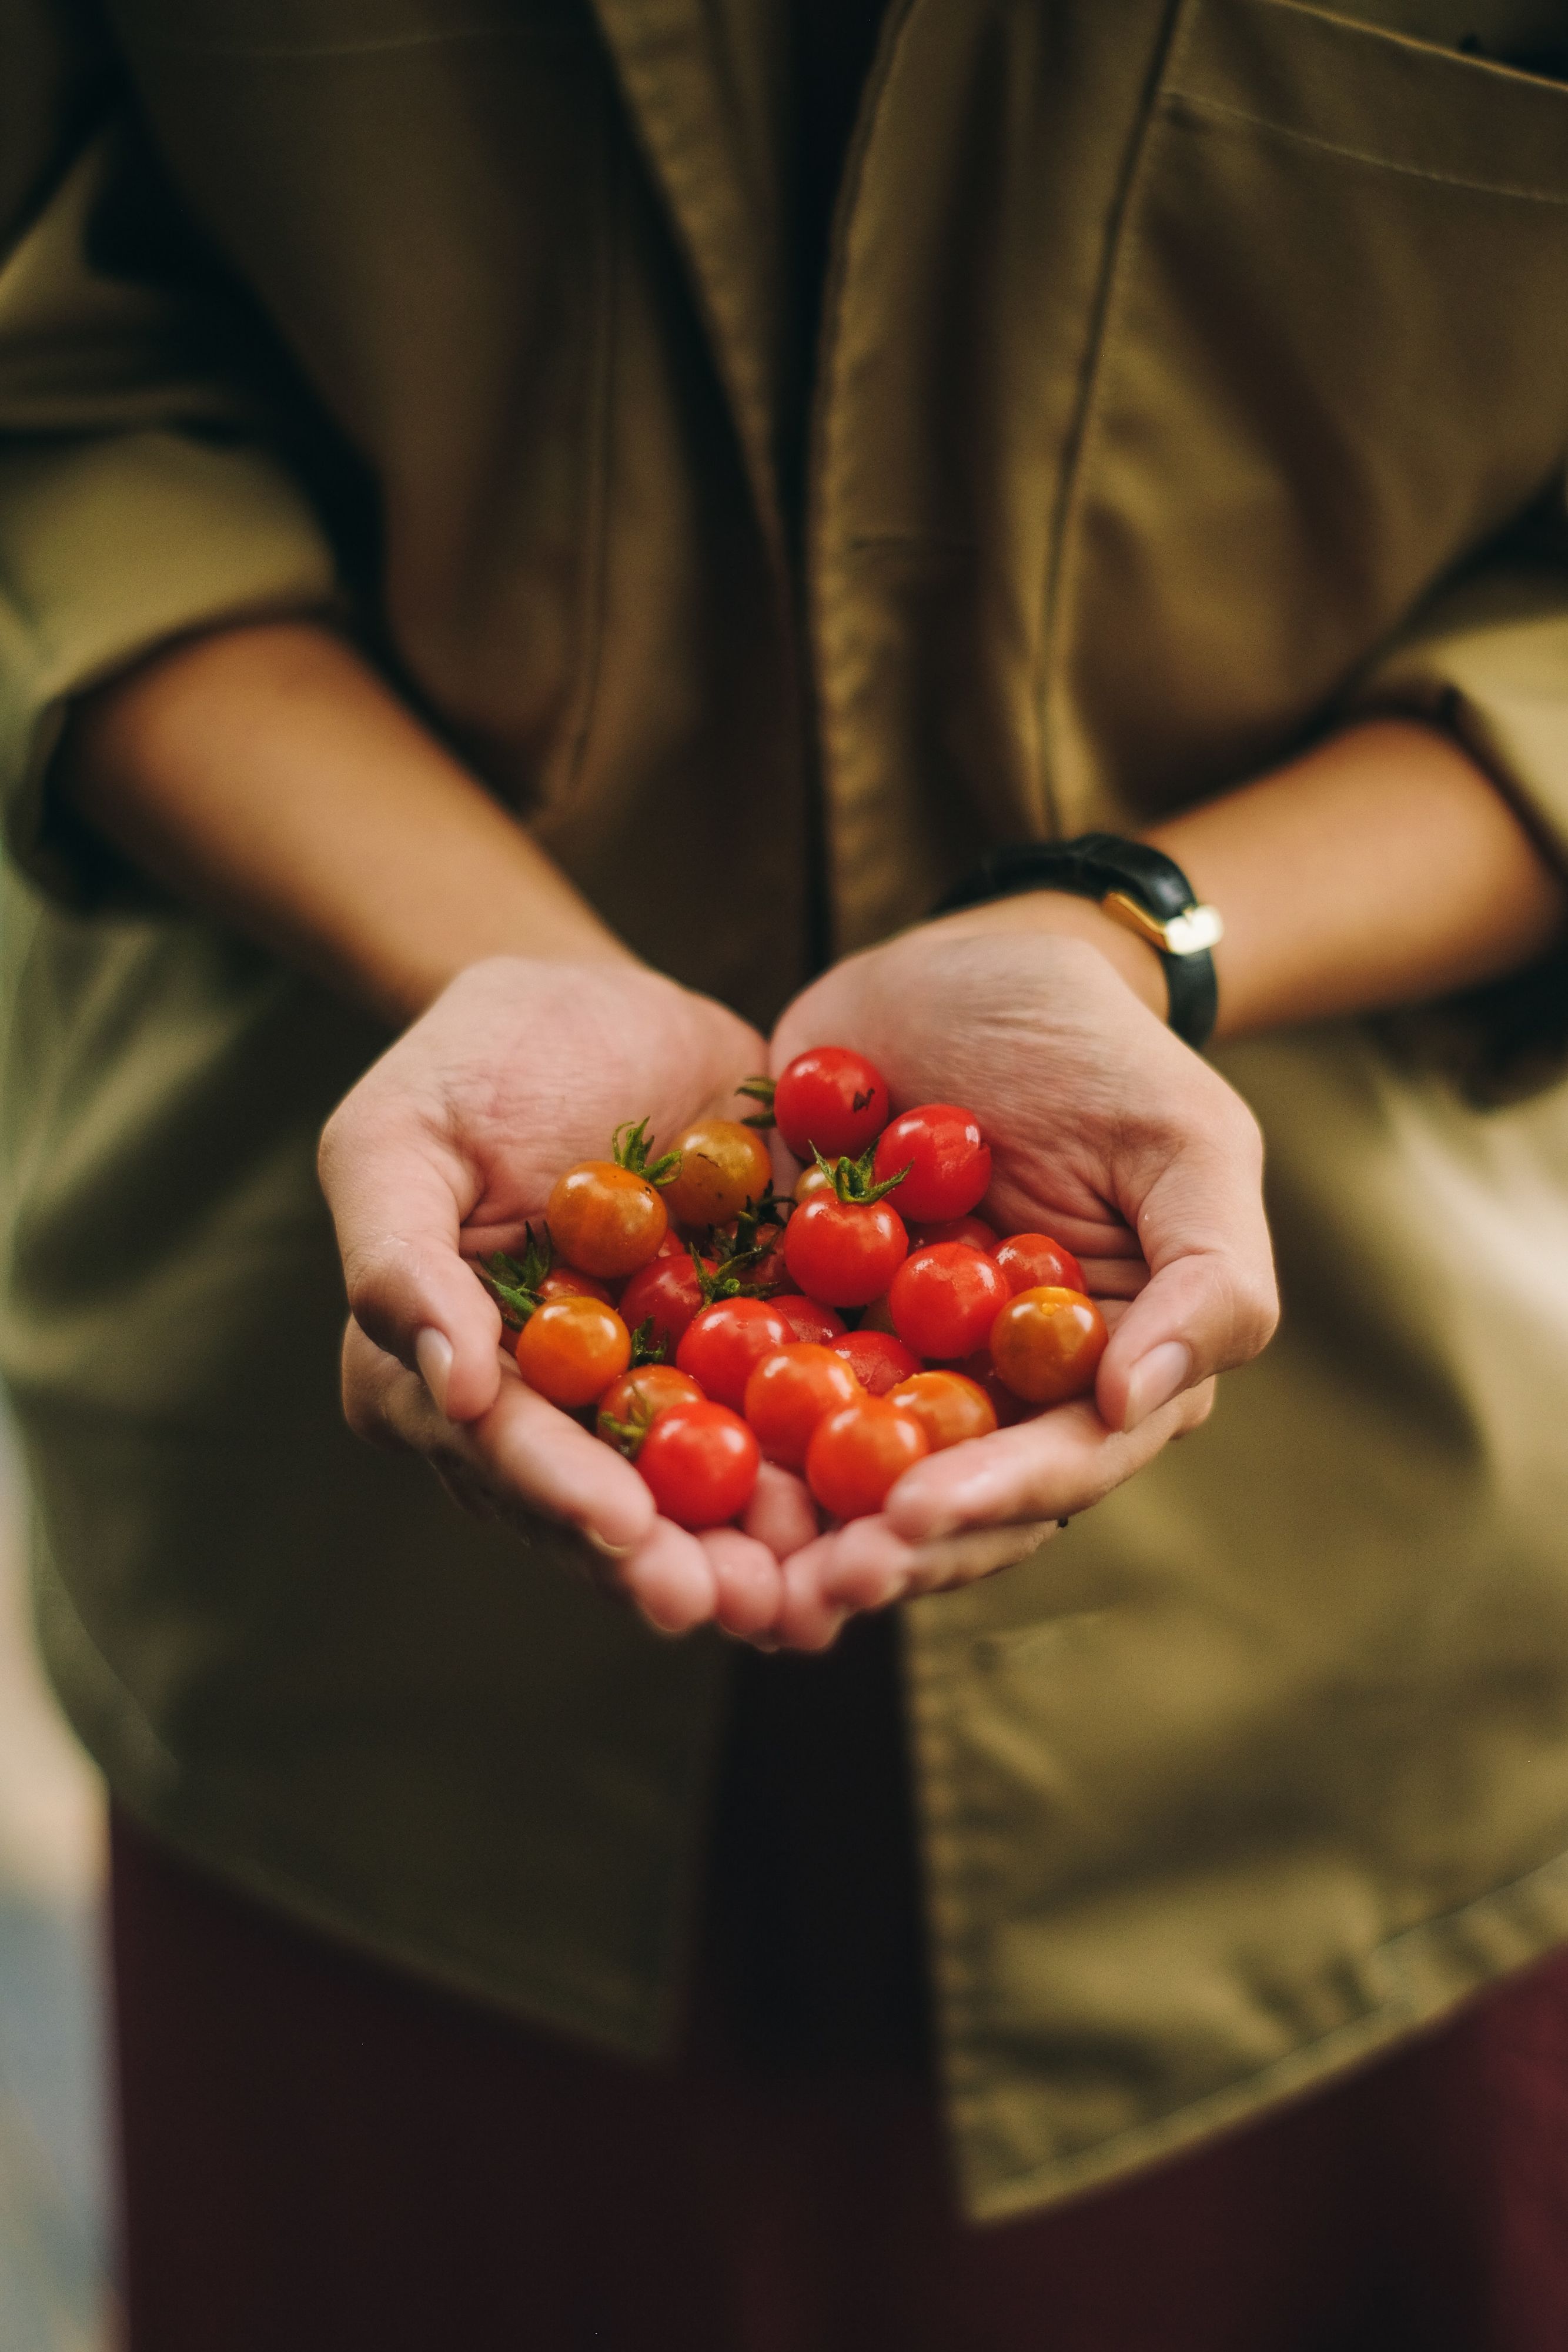 Eine Person hält kleine Tomaten in den Händen